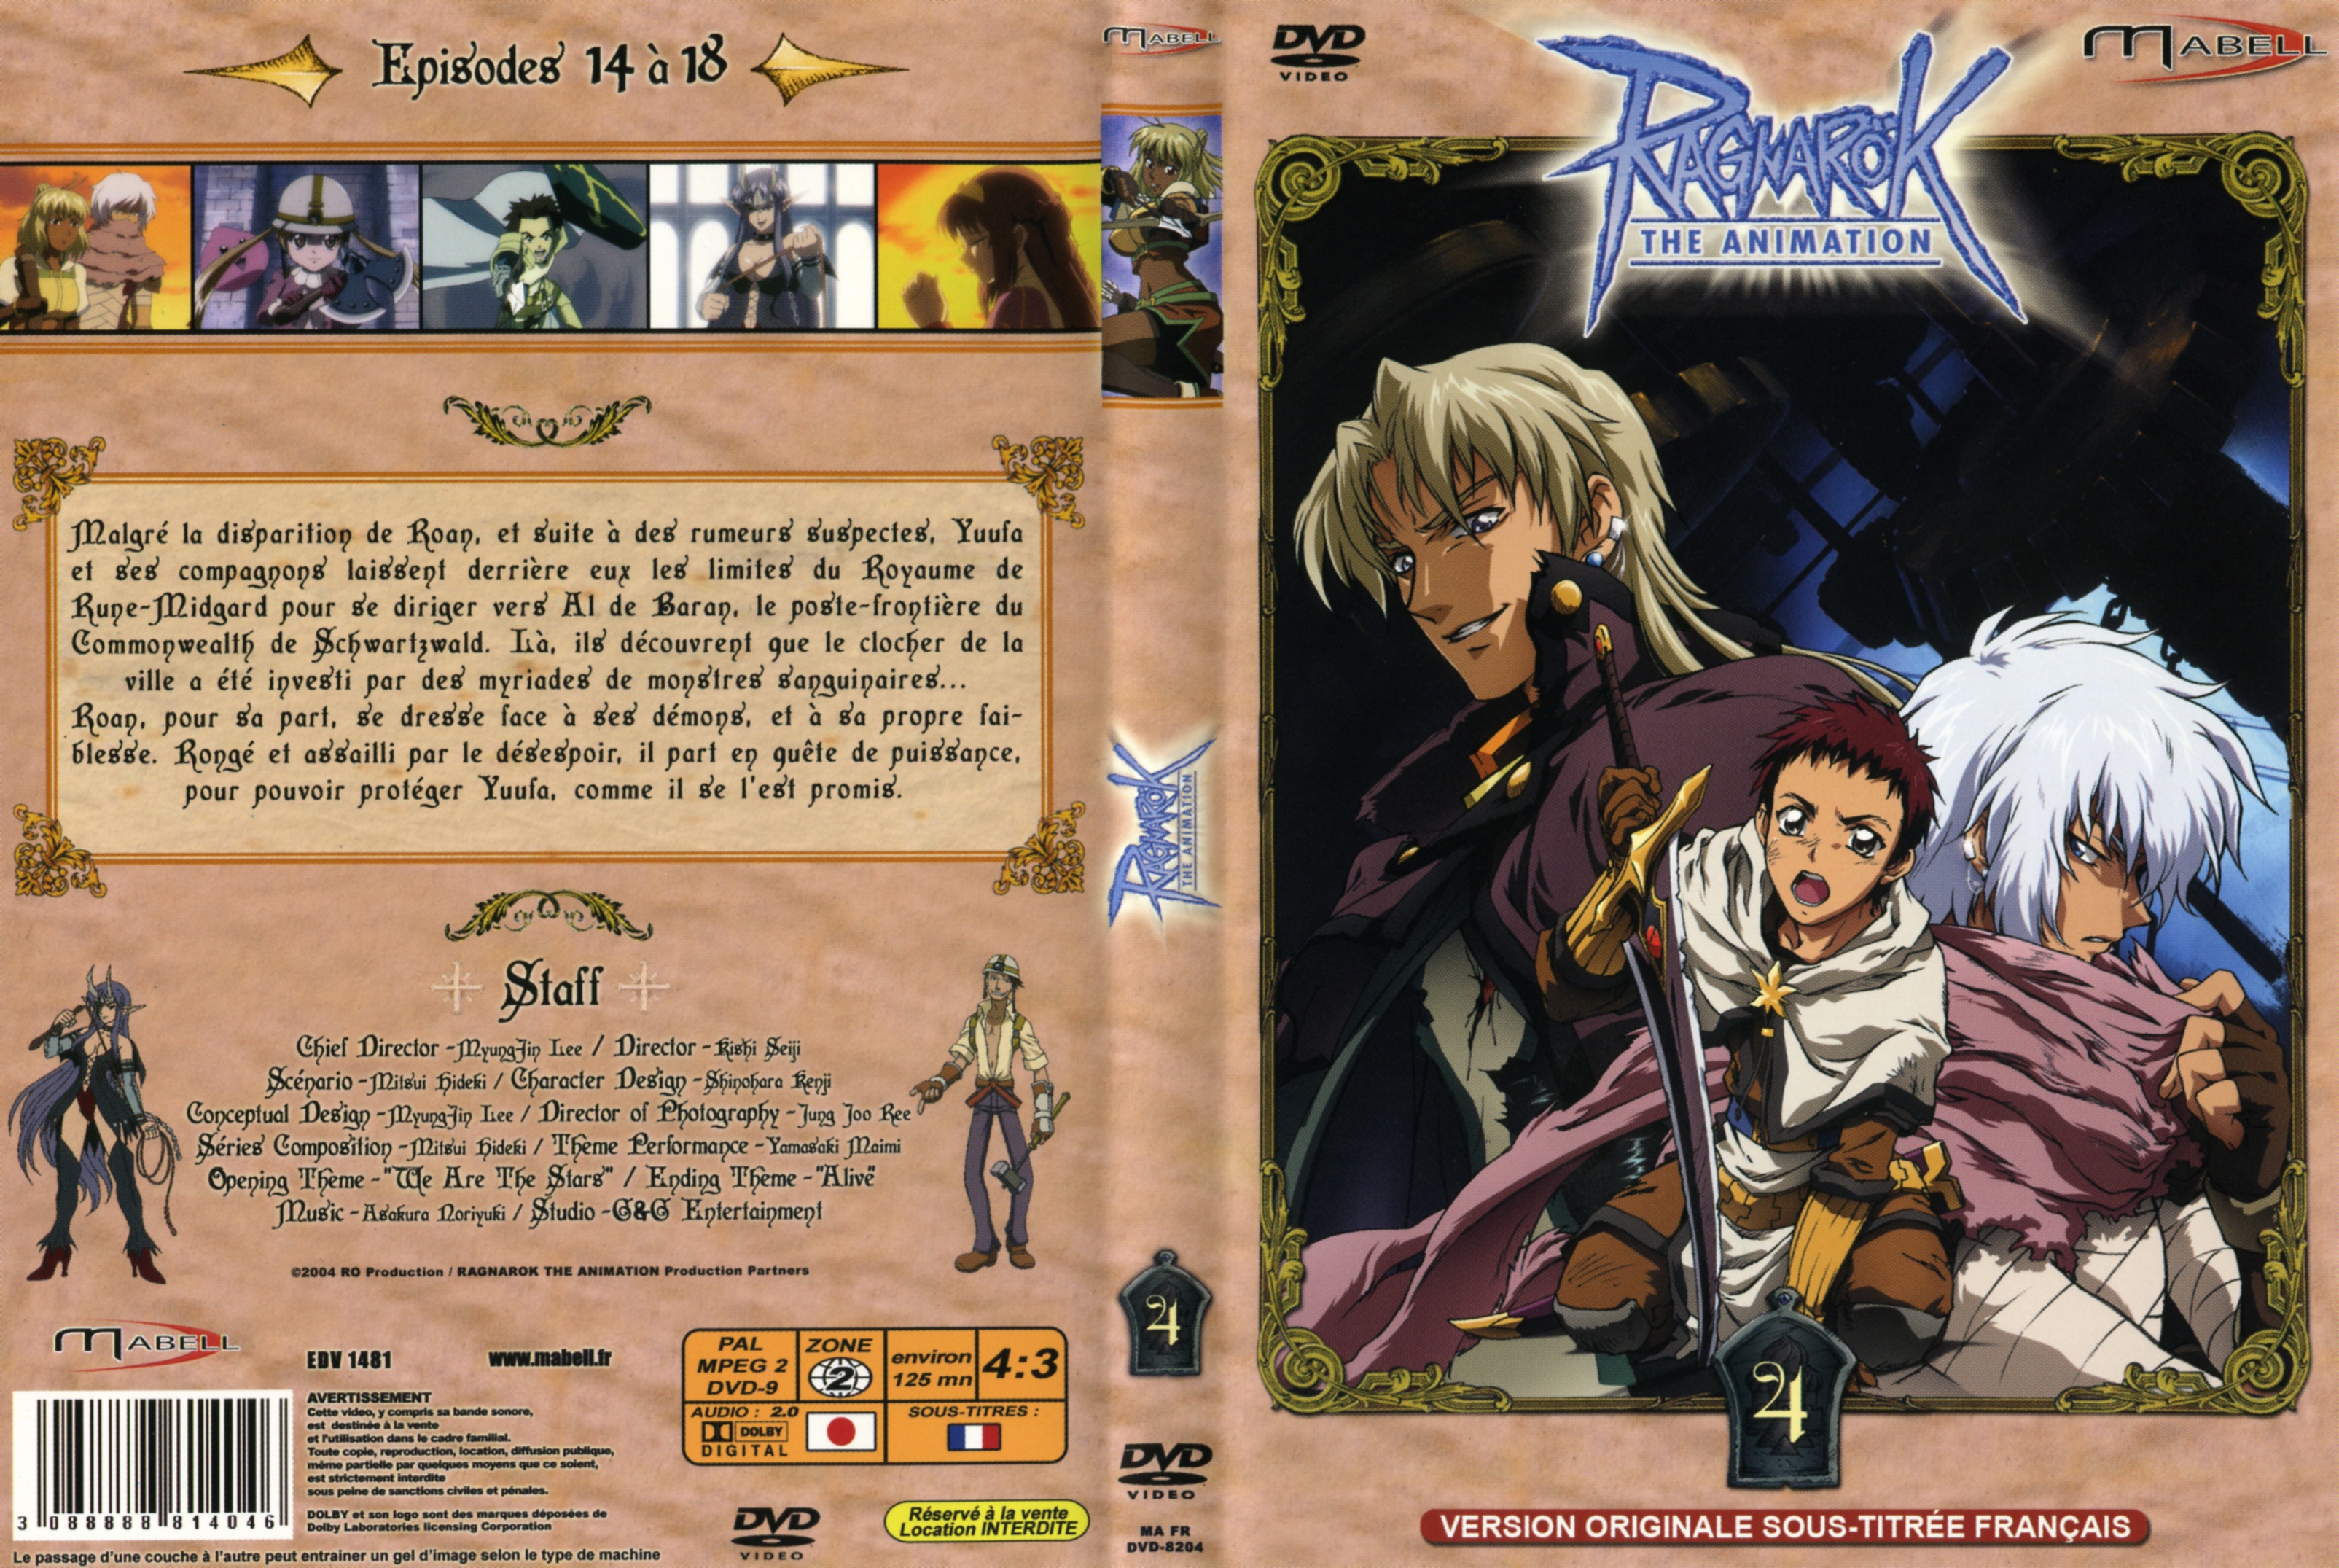 Jaquette DVD Ragnarok vol 4